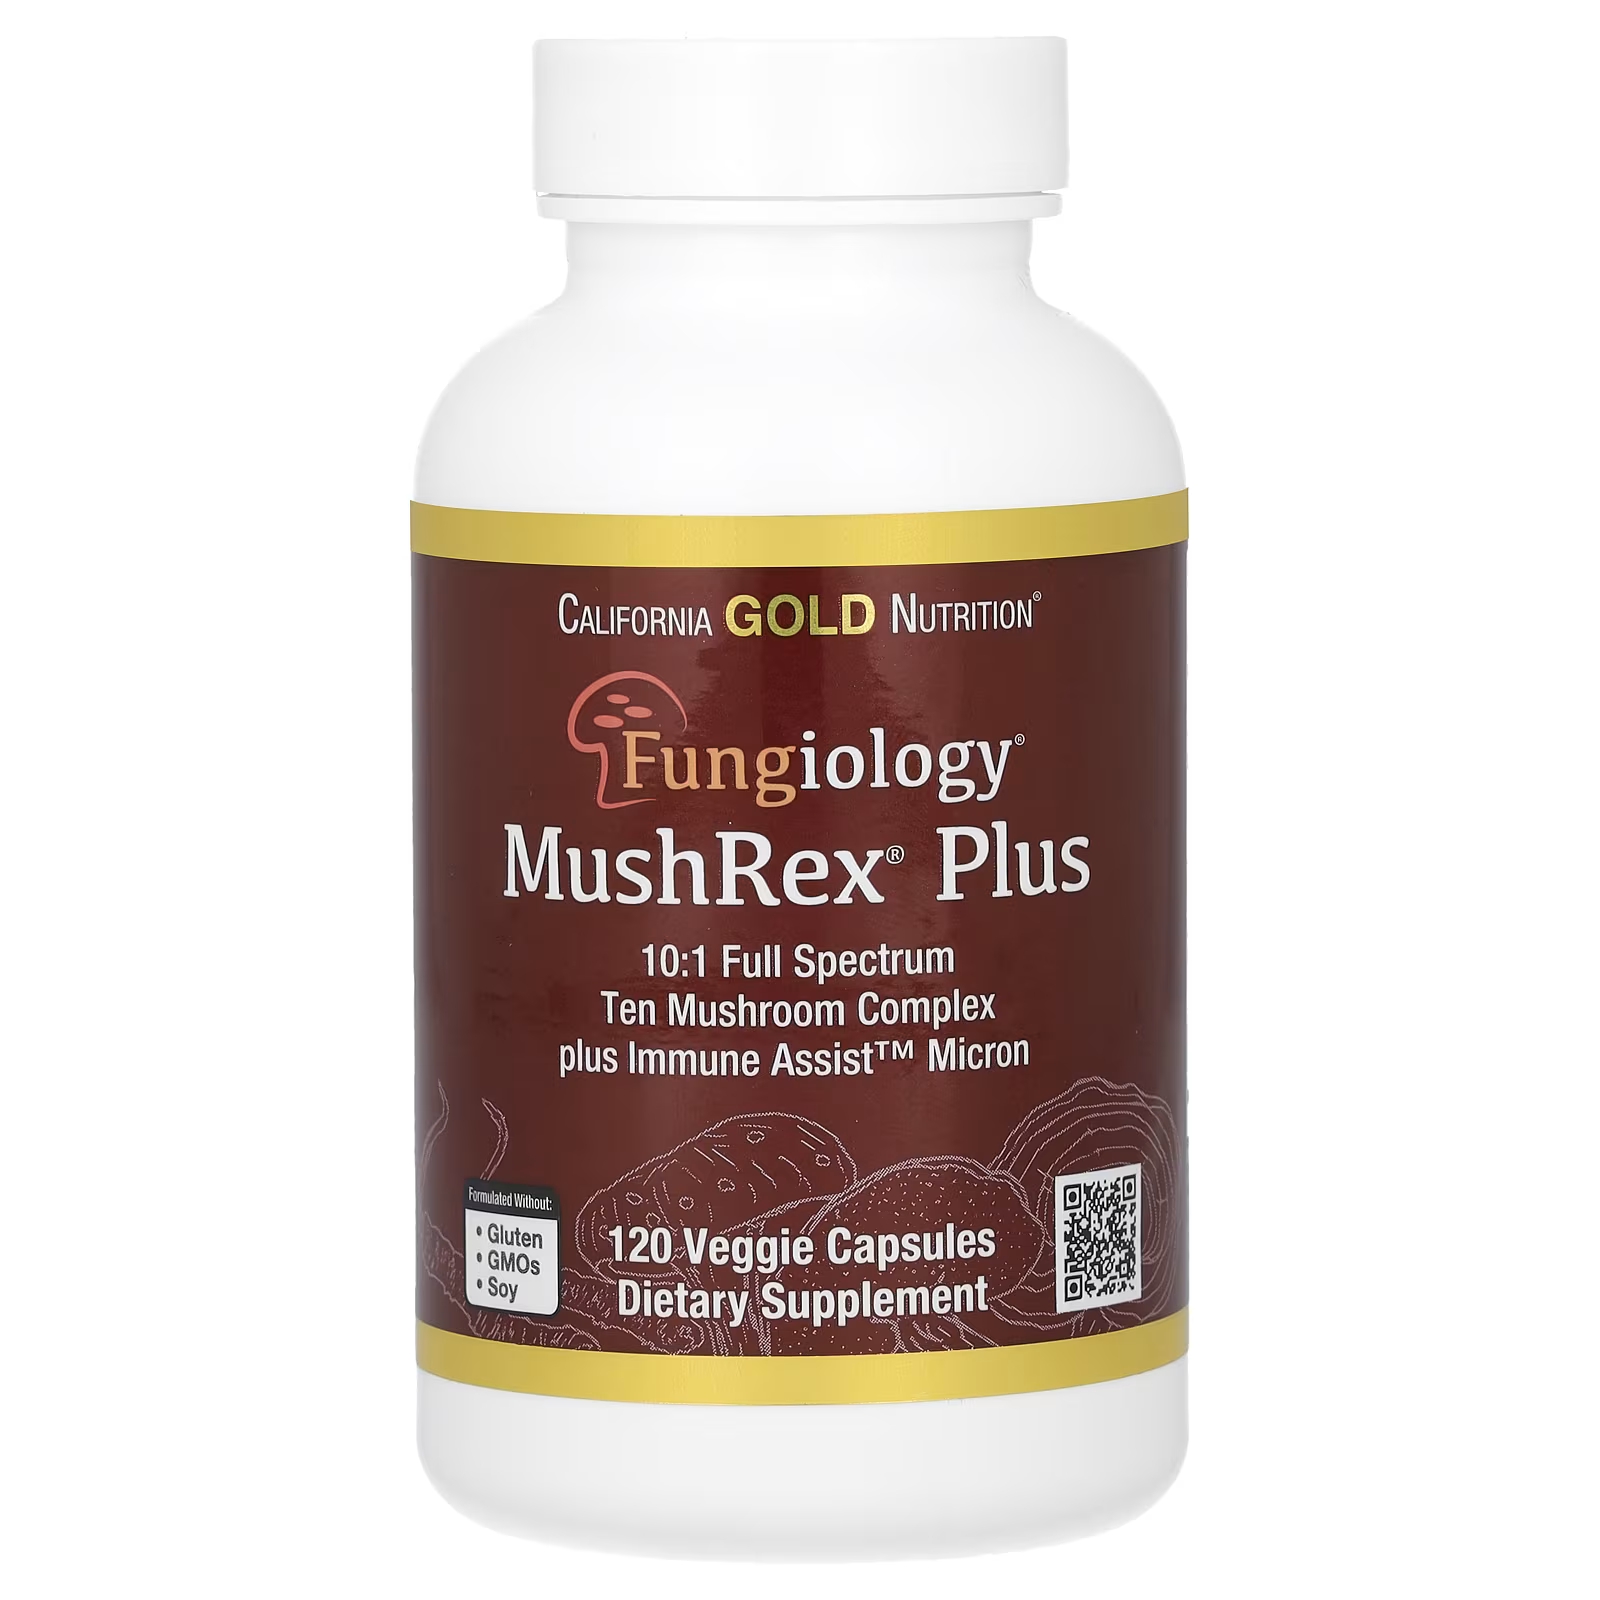 Fungiology MushRex Plus Грибной комплекс полного спектра Сертифицированный органический стимулятор иммунитета Micron 120 растительных капсул California Gold Nutrition